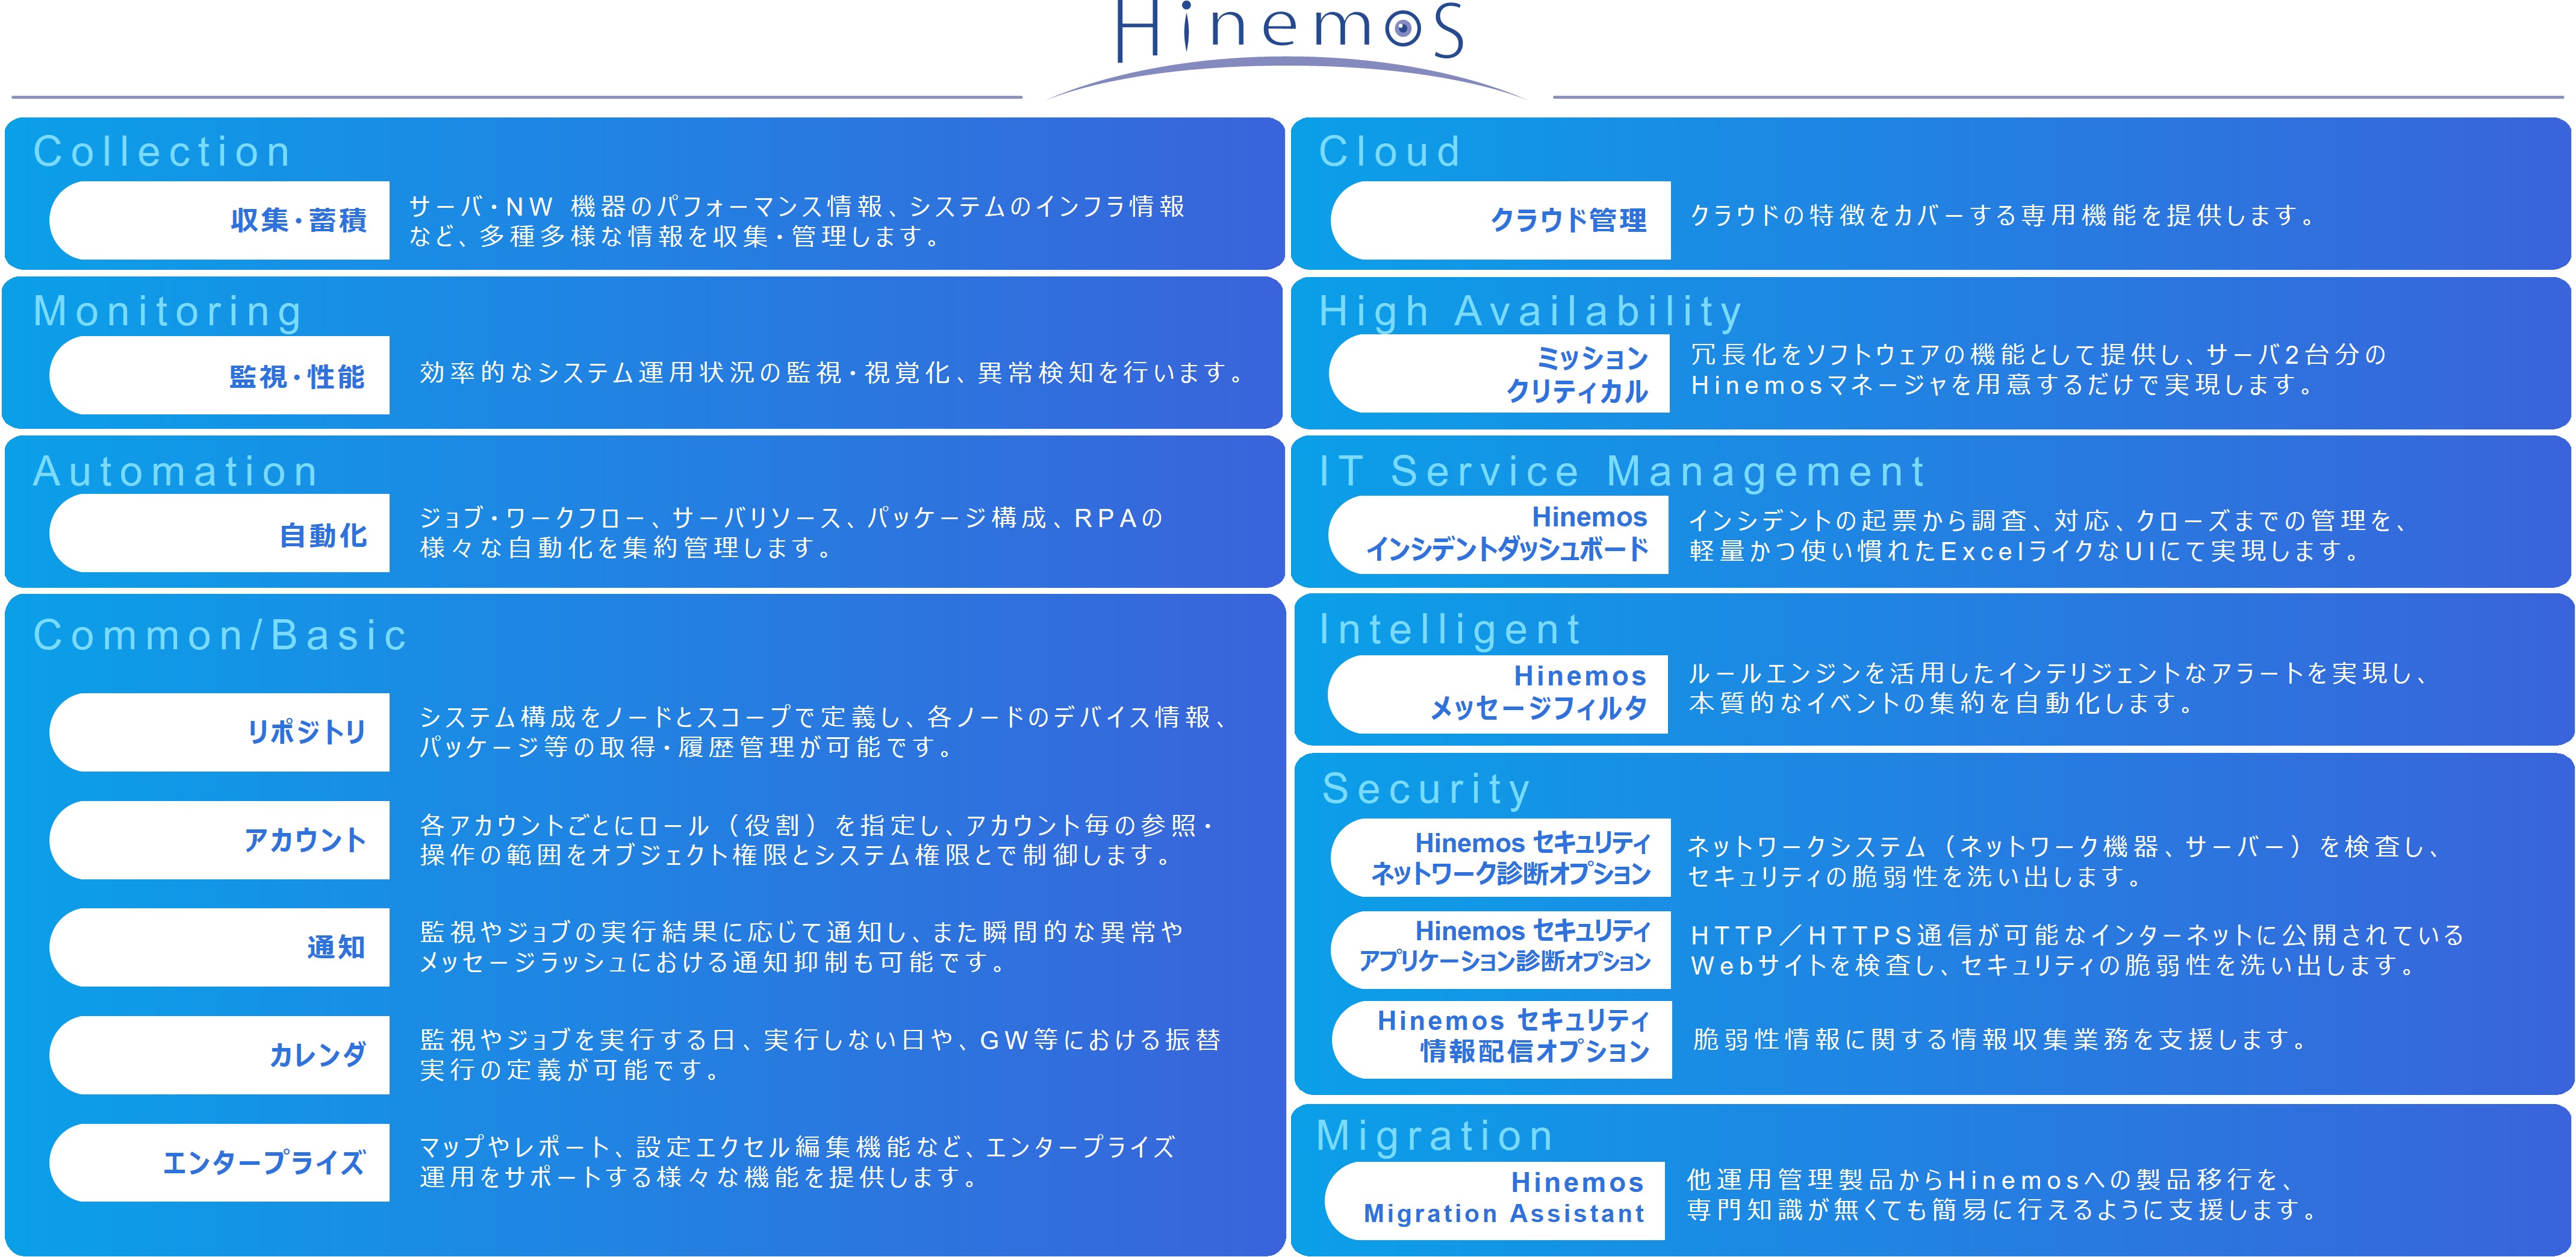 図2：「Hinemos ver.7.1」が提供する機能全体